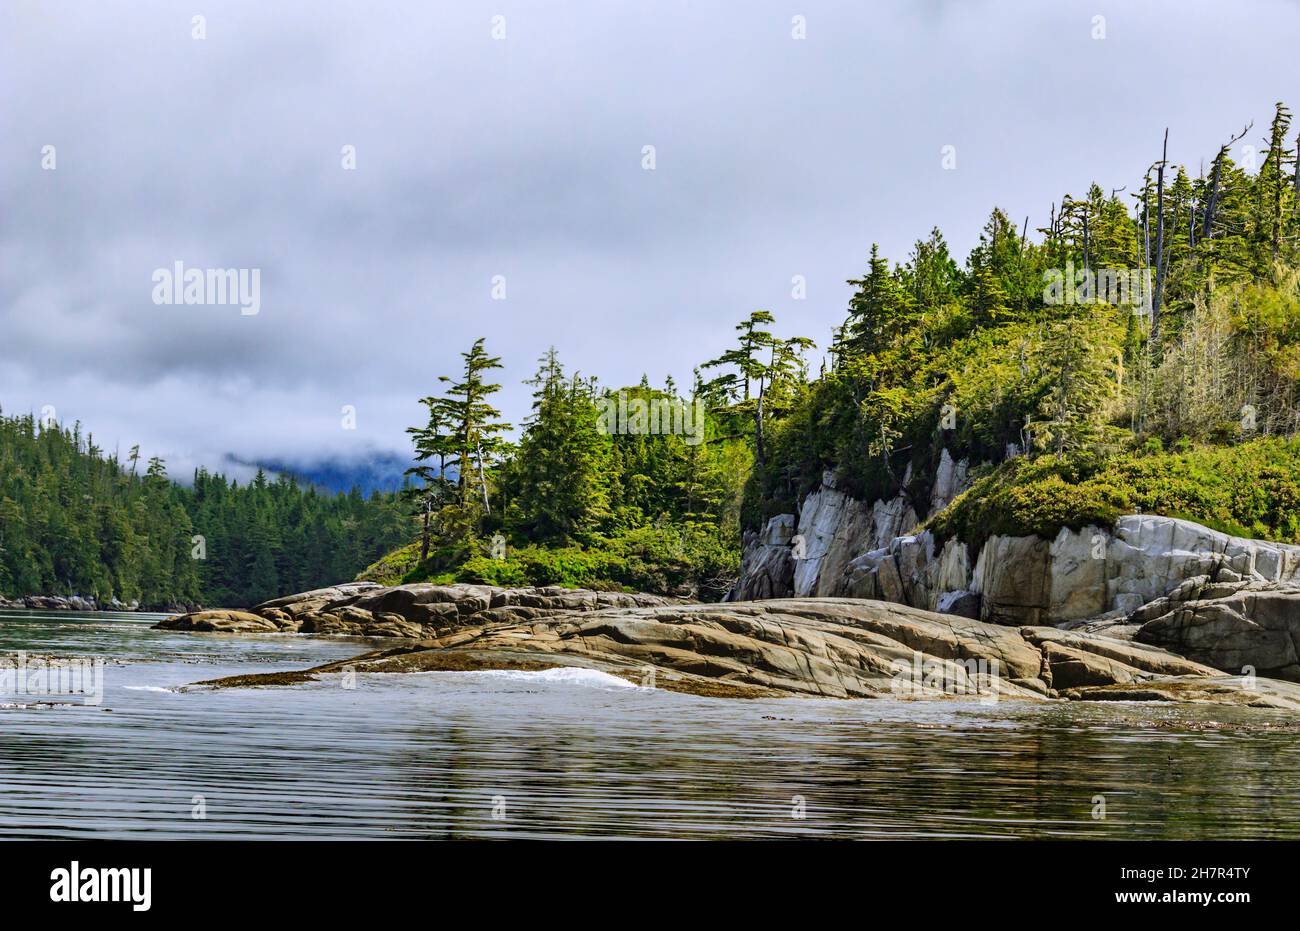 Las olas se lavan suavemente sobre una costa de una isla rocosa en el borde oriental del estrecho de Queen Charlotte, en la selva tropical costera de Great Bear en la Columbia Británica (julio). Foto de stock